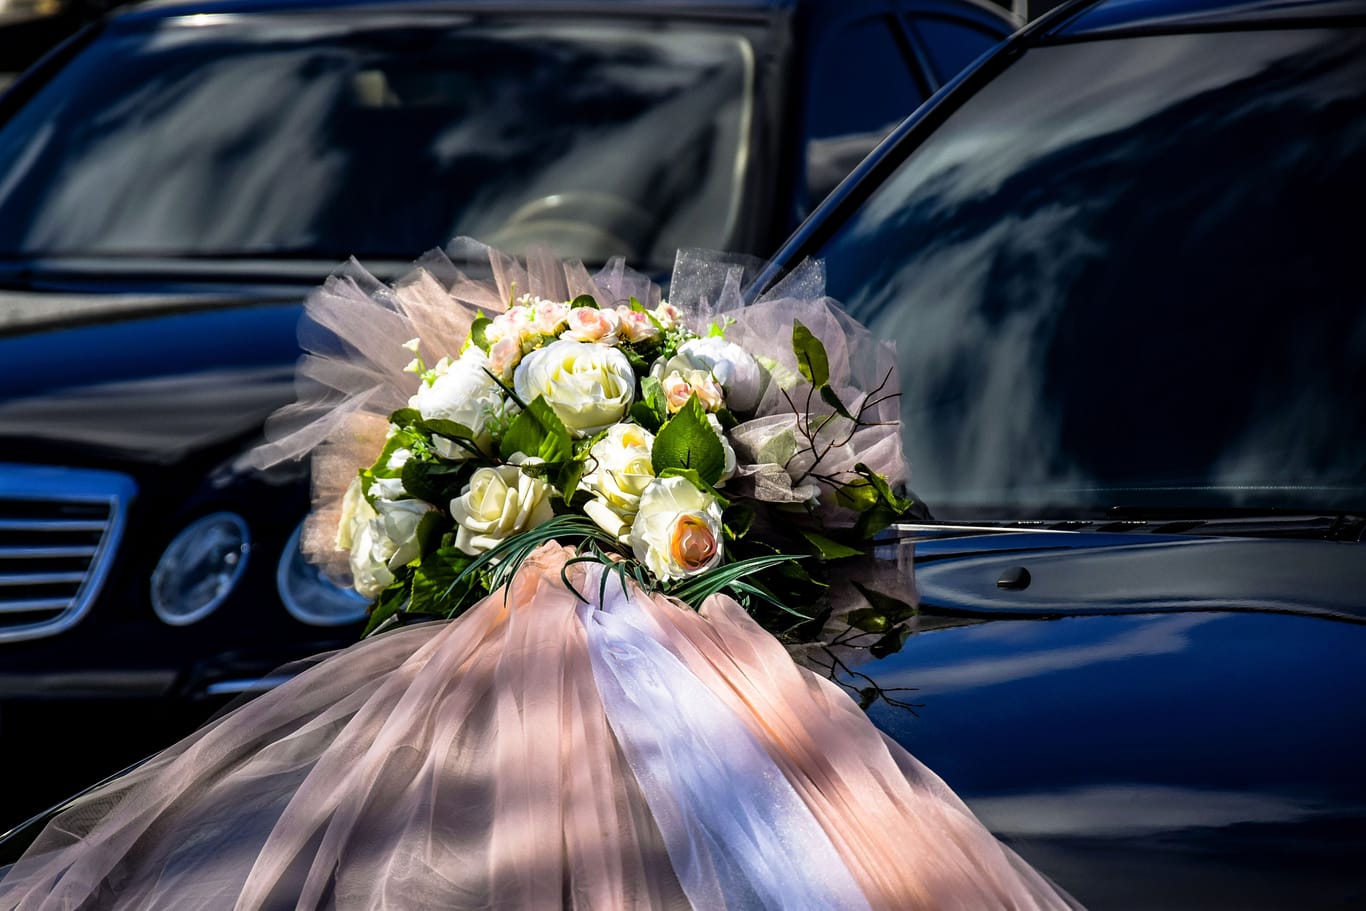 Autos mit einem Hochzeitsbouquet: Freude darf sich auch beim Fahren zeigen, der Verkehr aber nicht behindert werden.